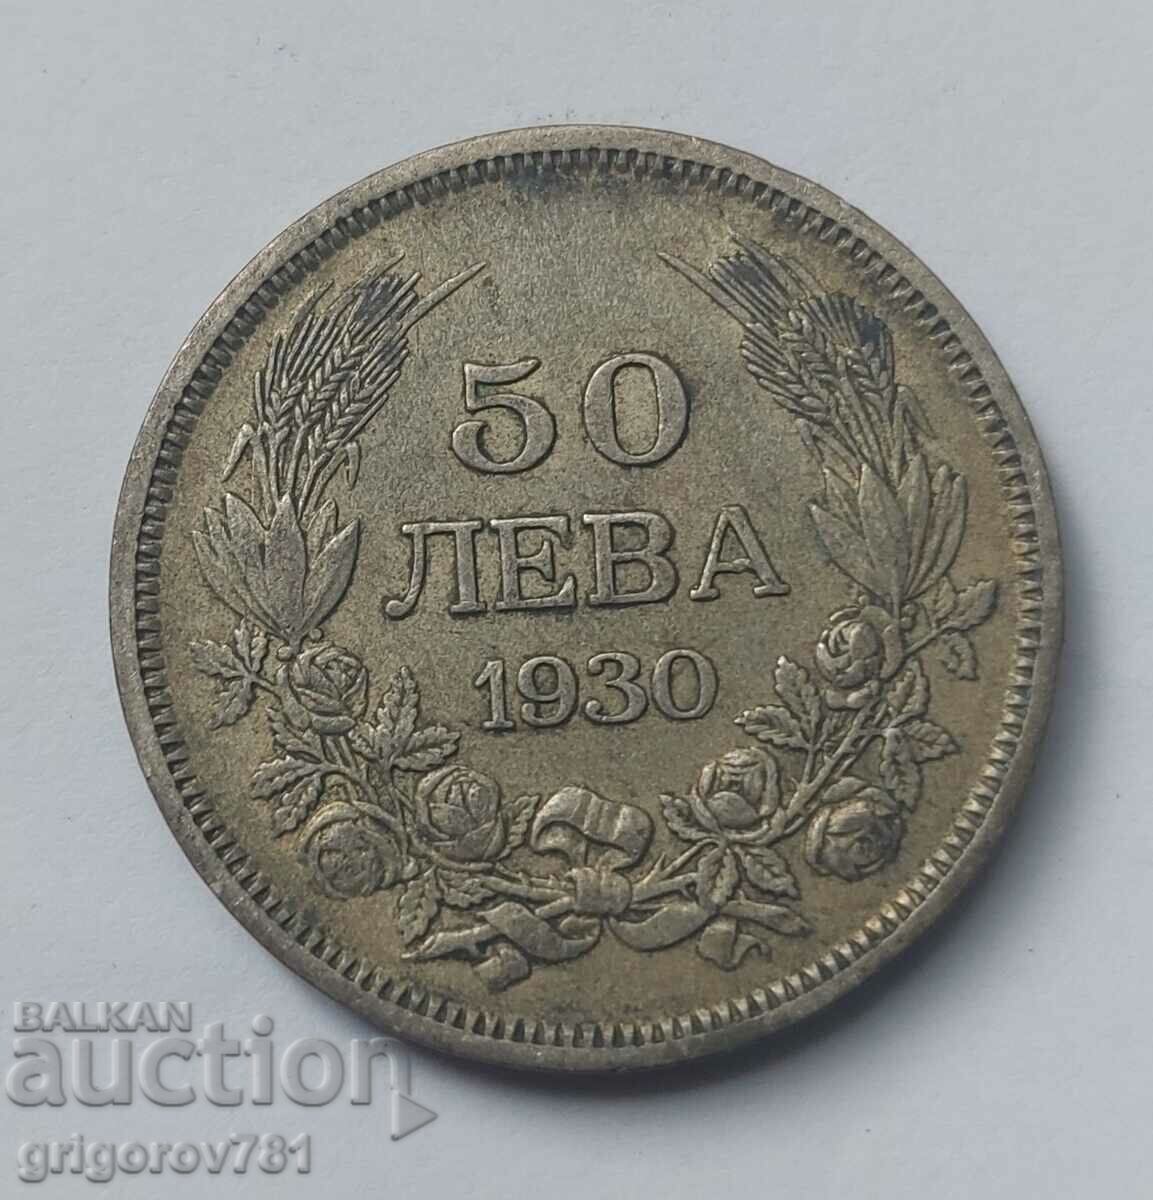 Ασήμι 50 λέβα Βουλγαρία 1930 - ασημένιο νόμισμα #36